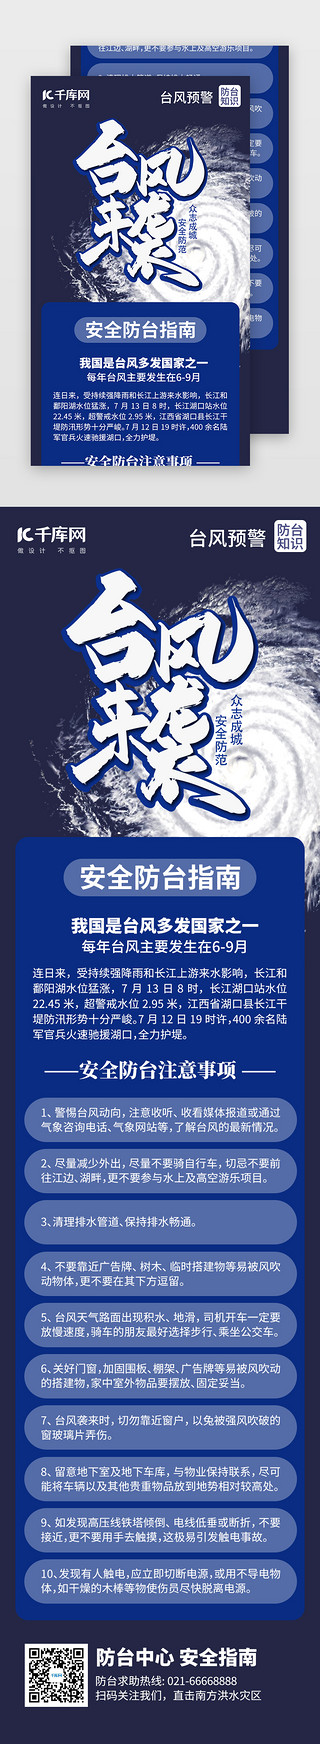 台风预警安全指南H5